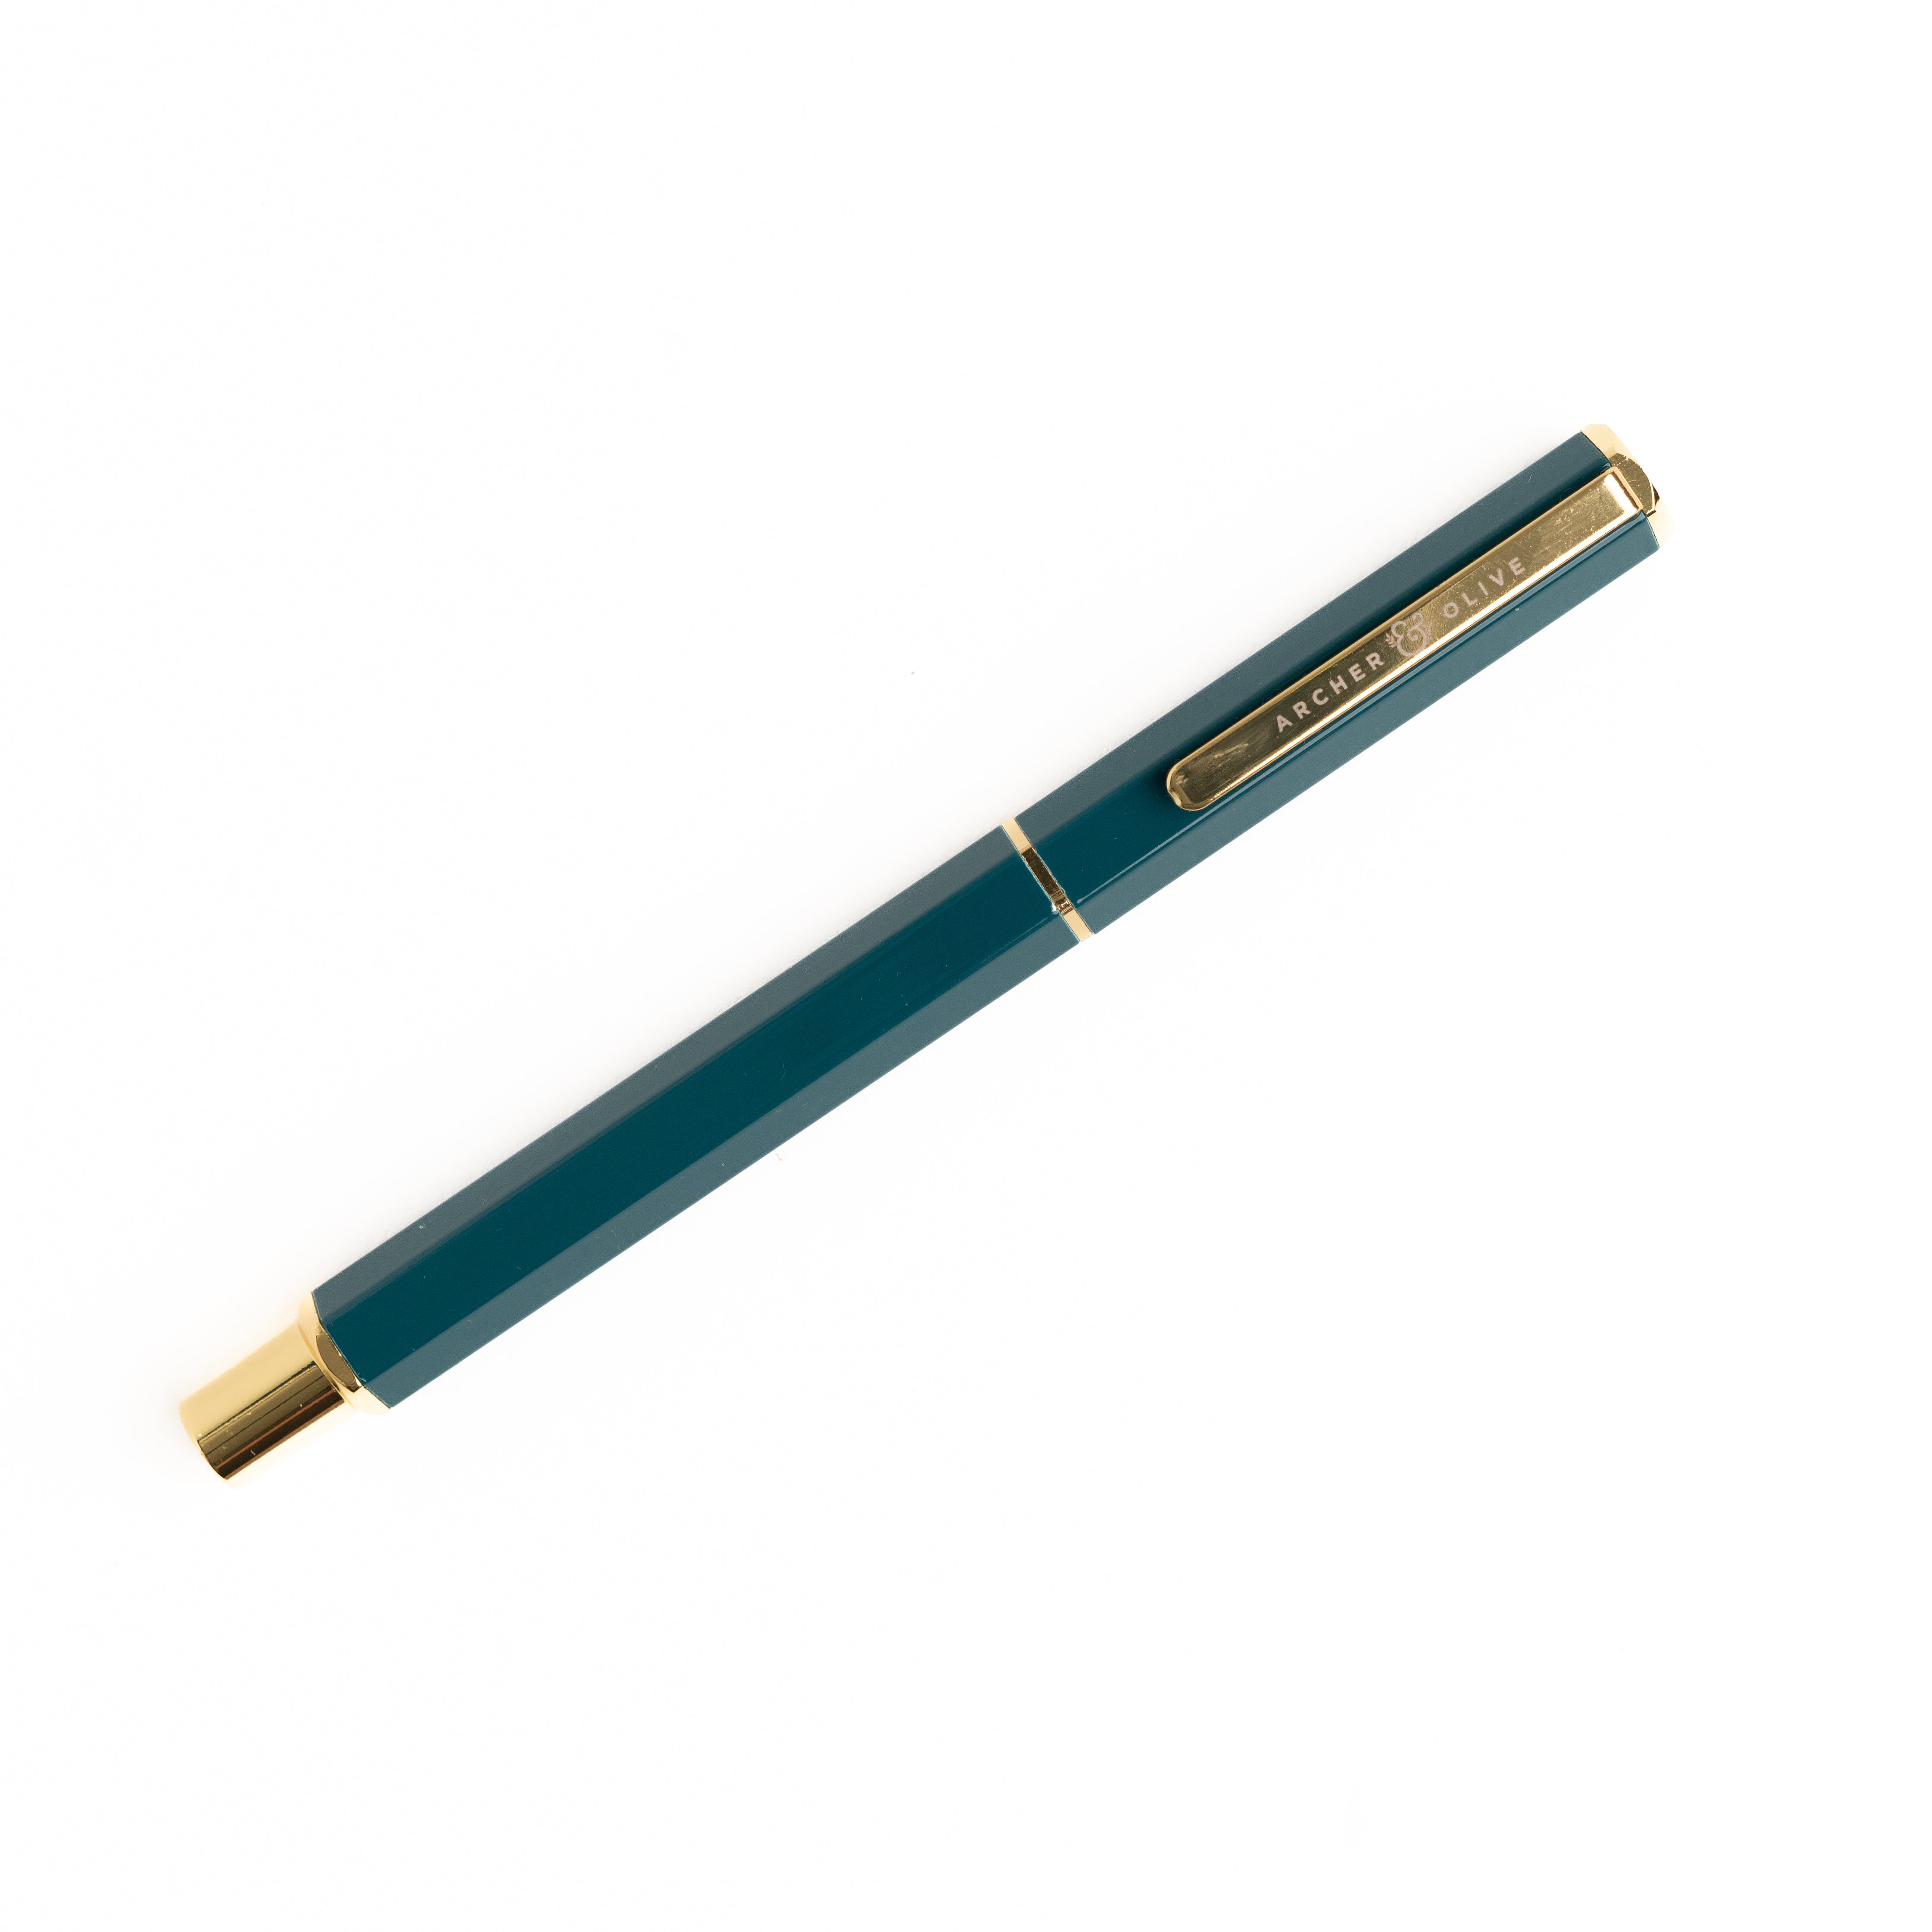 Fine Point Colored Gel Pens 0.5 Mm I 10 Pack I Bullet Journaling